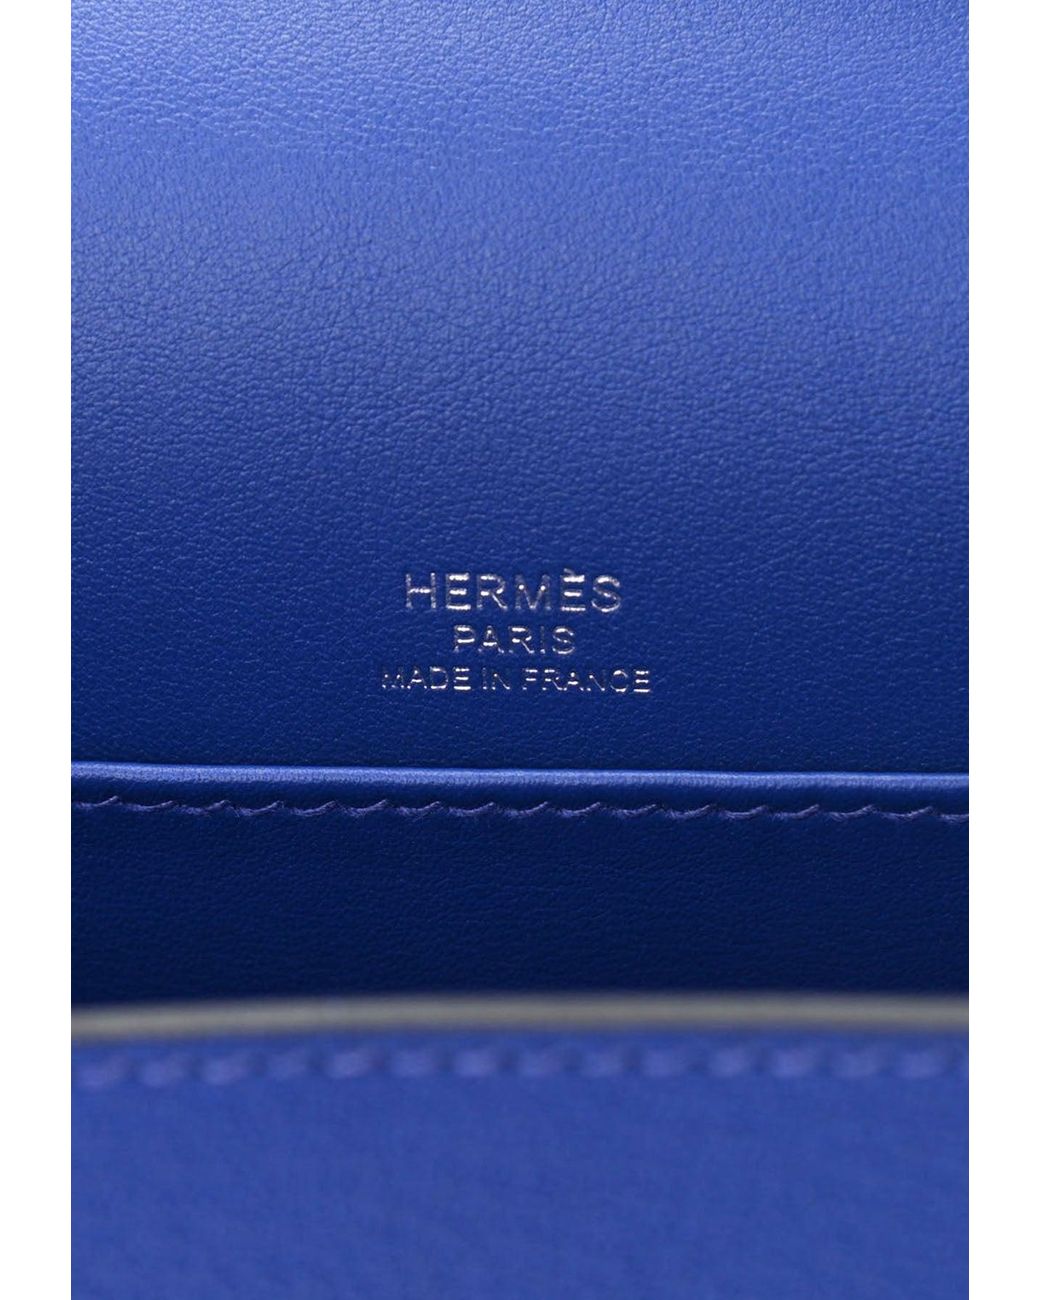 Pre Loved Hermes Chevre Mysore Geta Bag – Bluefly